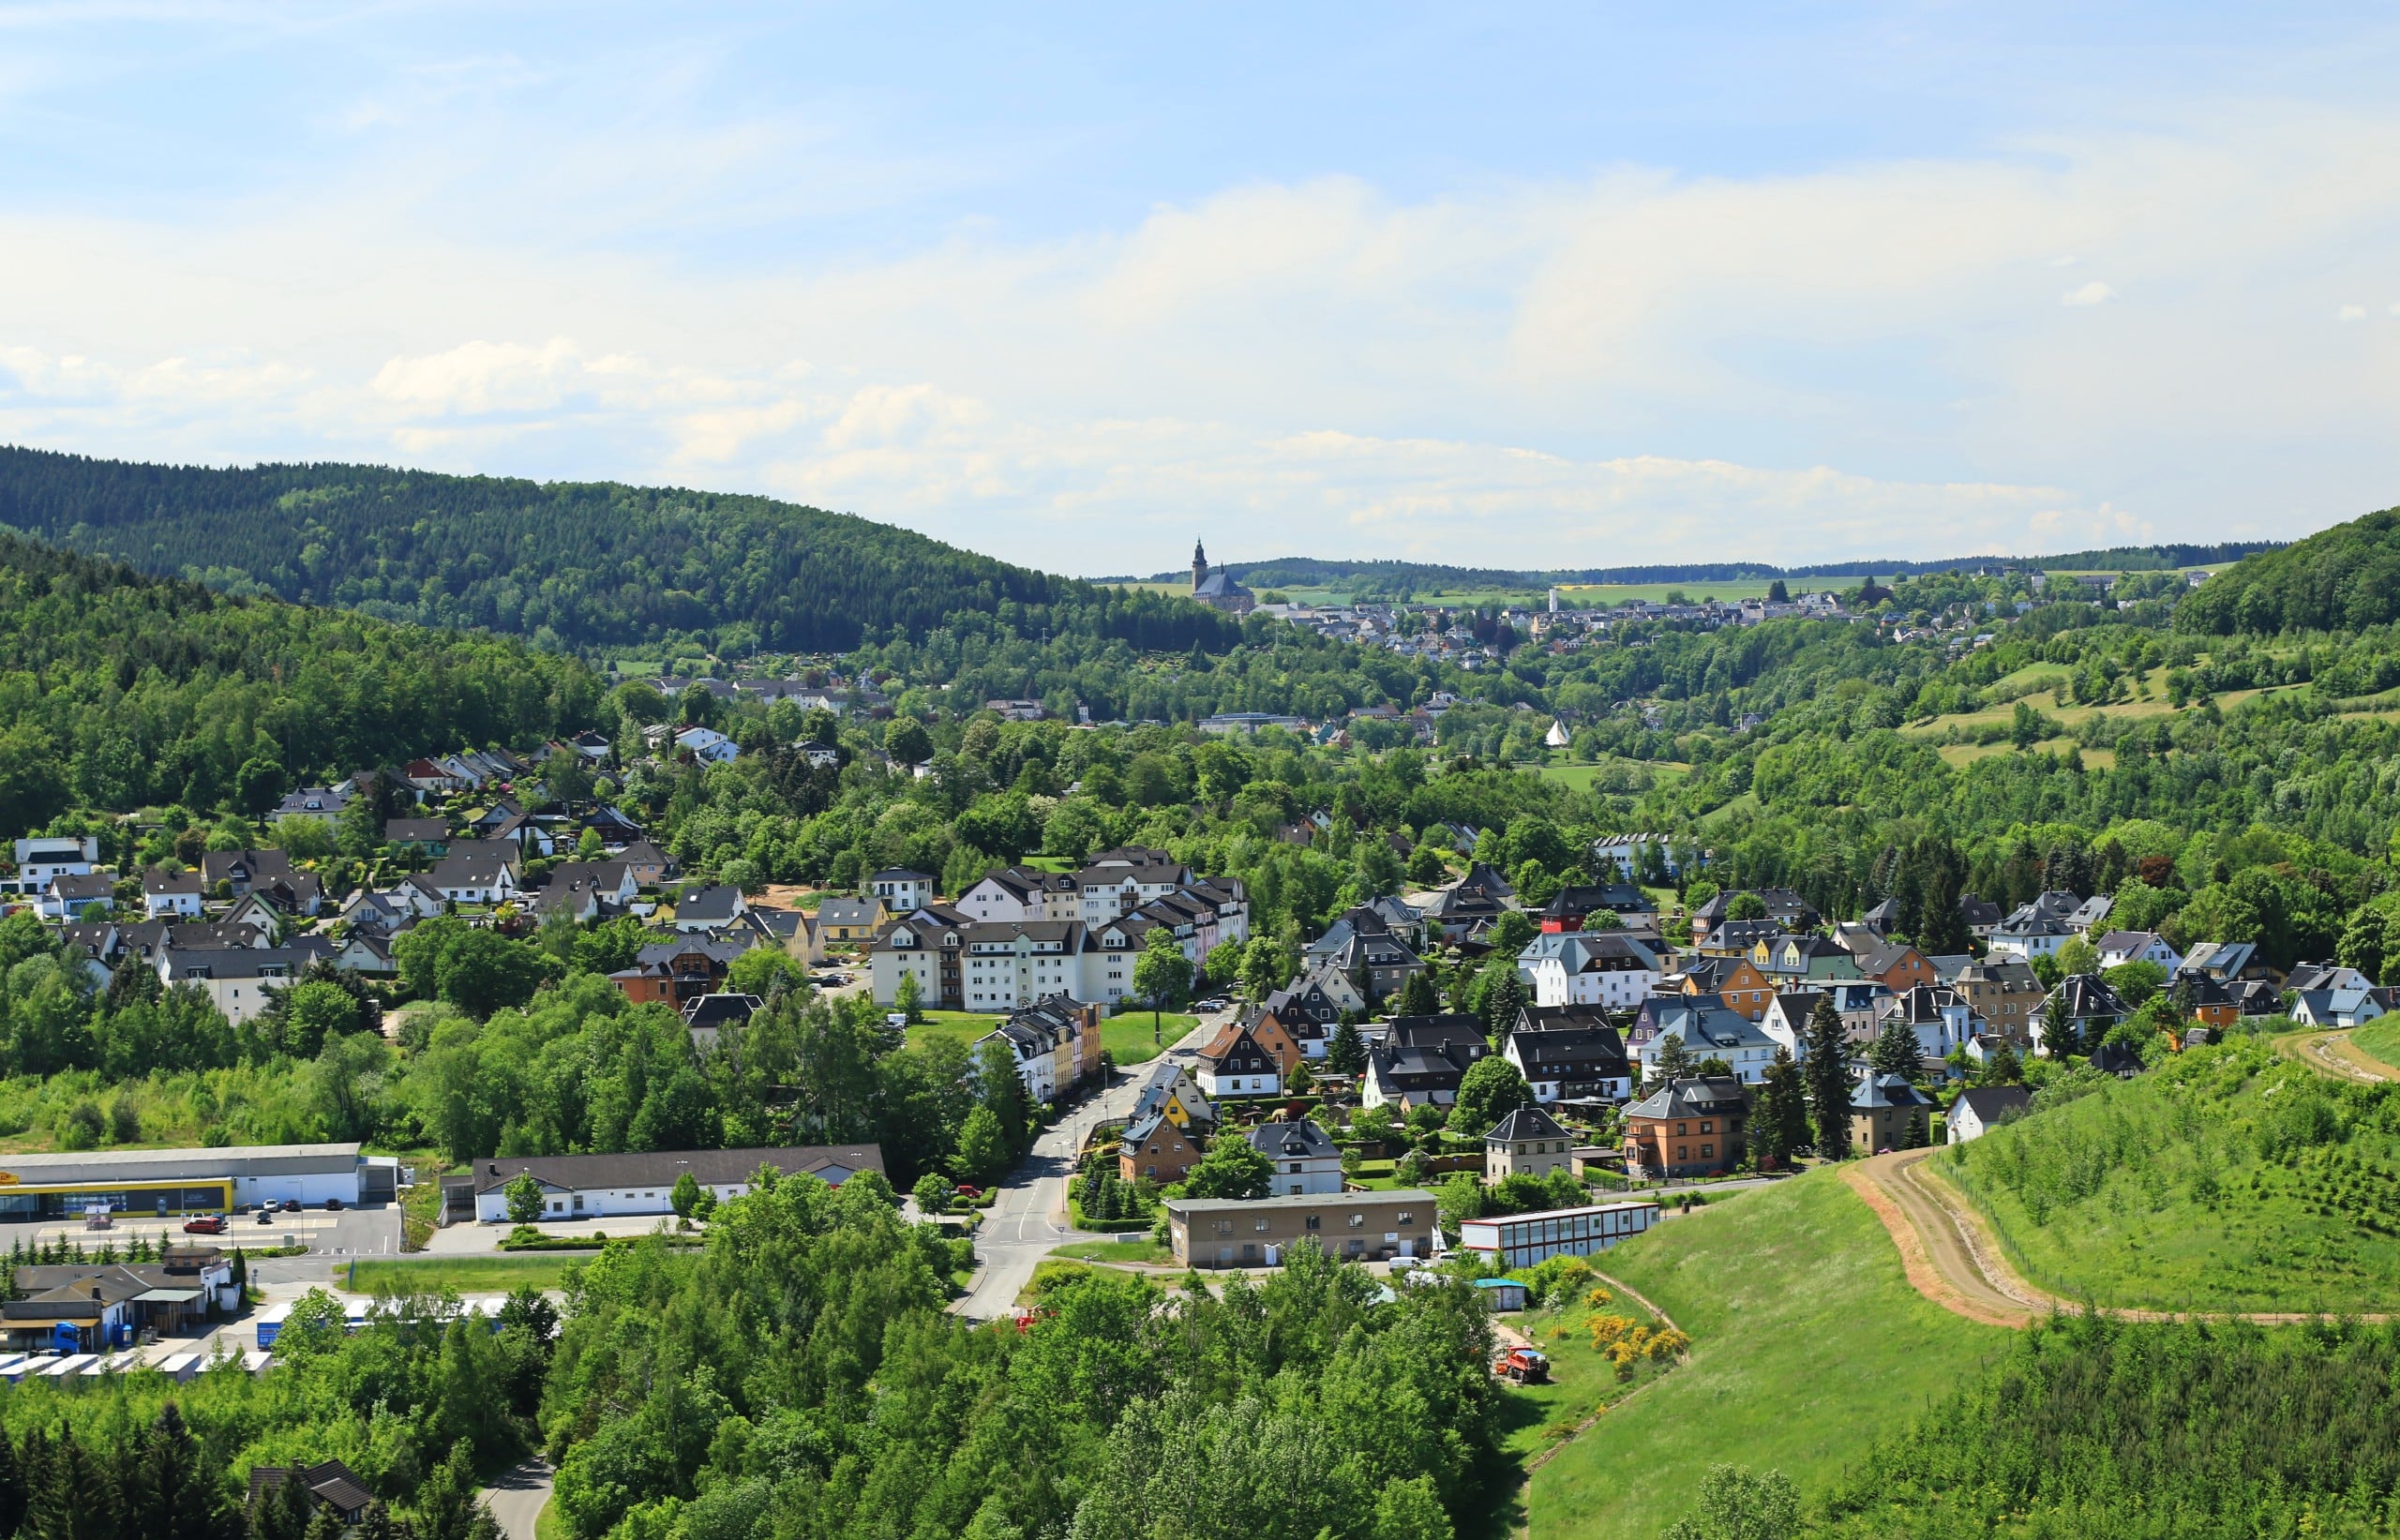 Die 10. Sächsische Gartenschau soll im Jahr 2026 in Bad Schlema stattfinden. Bildquelle: Kora27, CC BY-SA 4.0 , via Wikimedia Commons